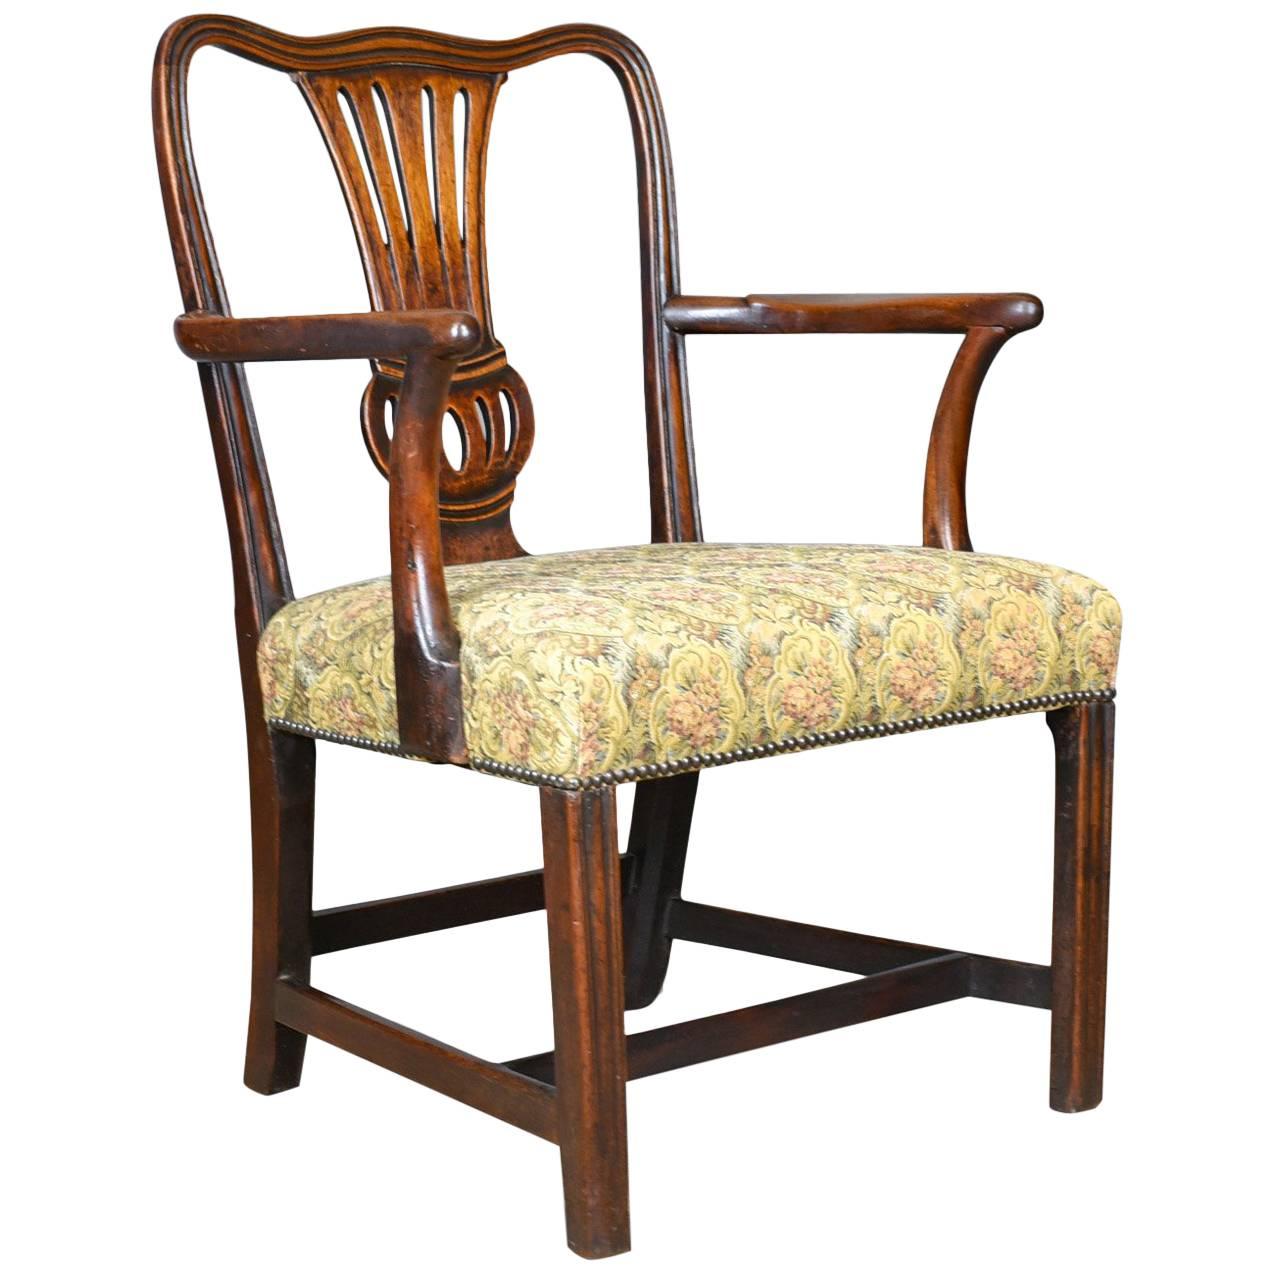 Antique Elbow Chair, English, Georgian, Mahogany, Open Armchair, circa 1780